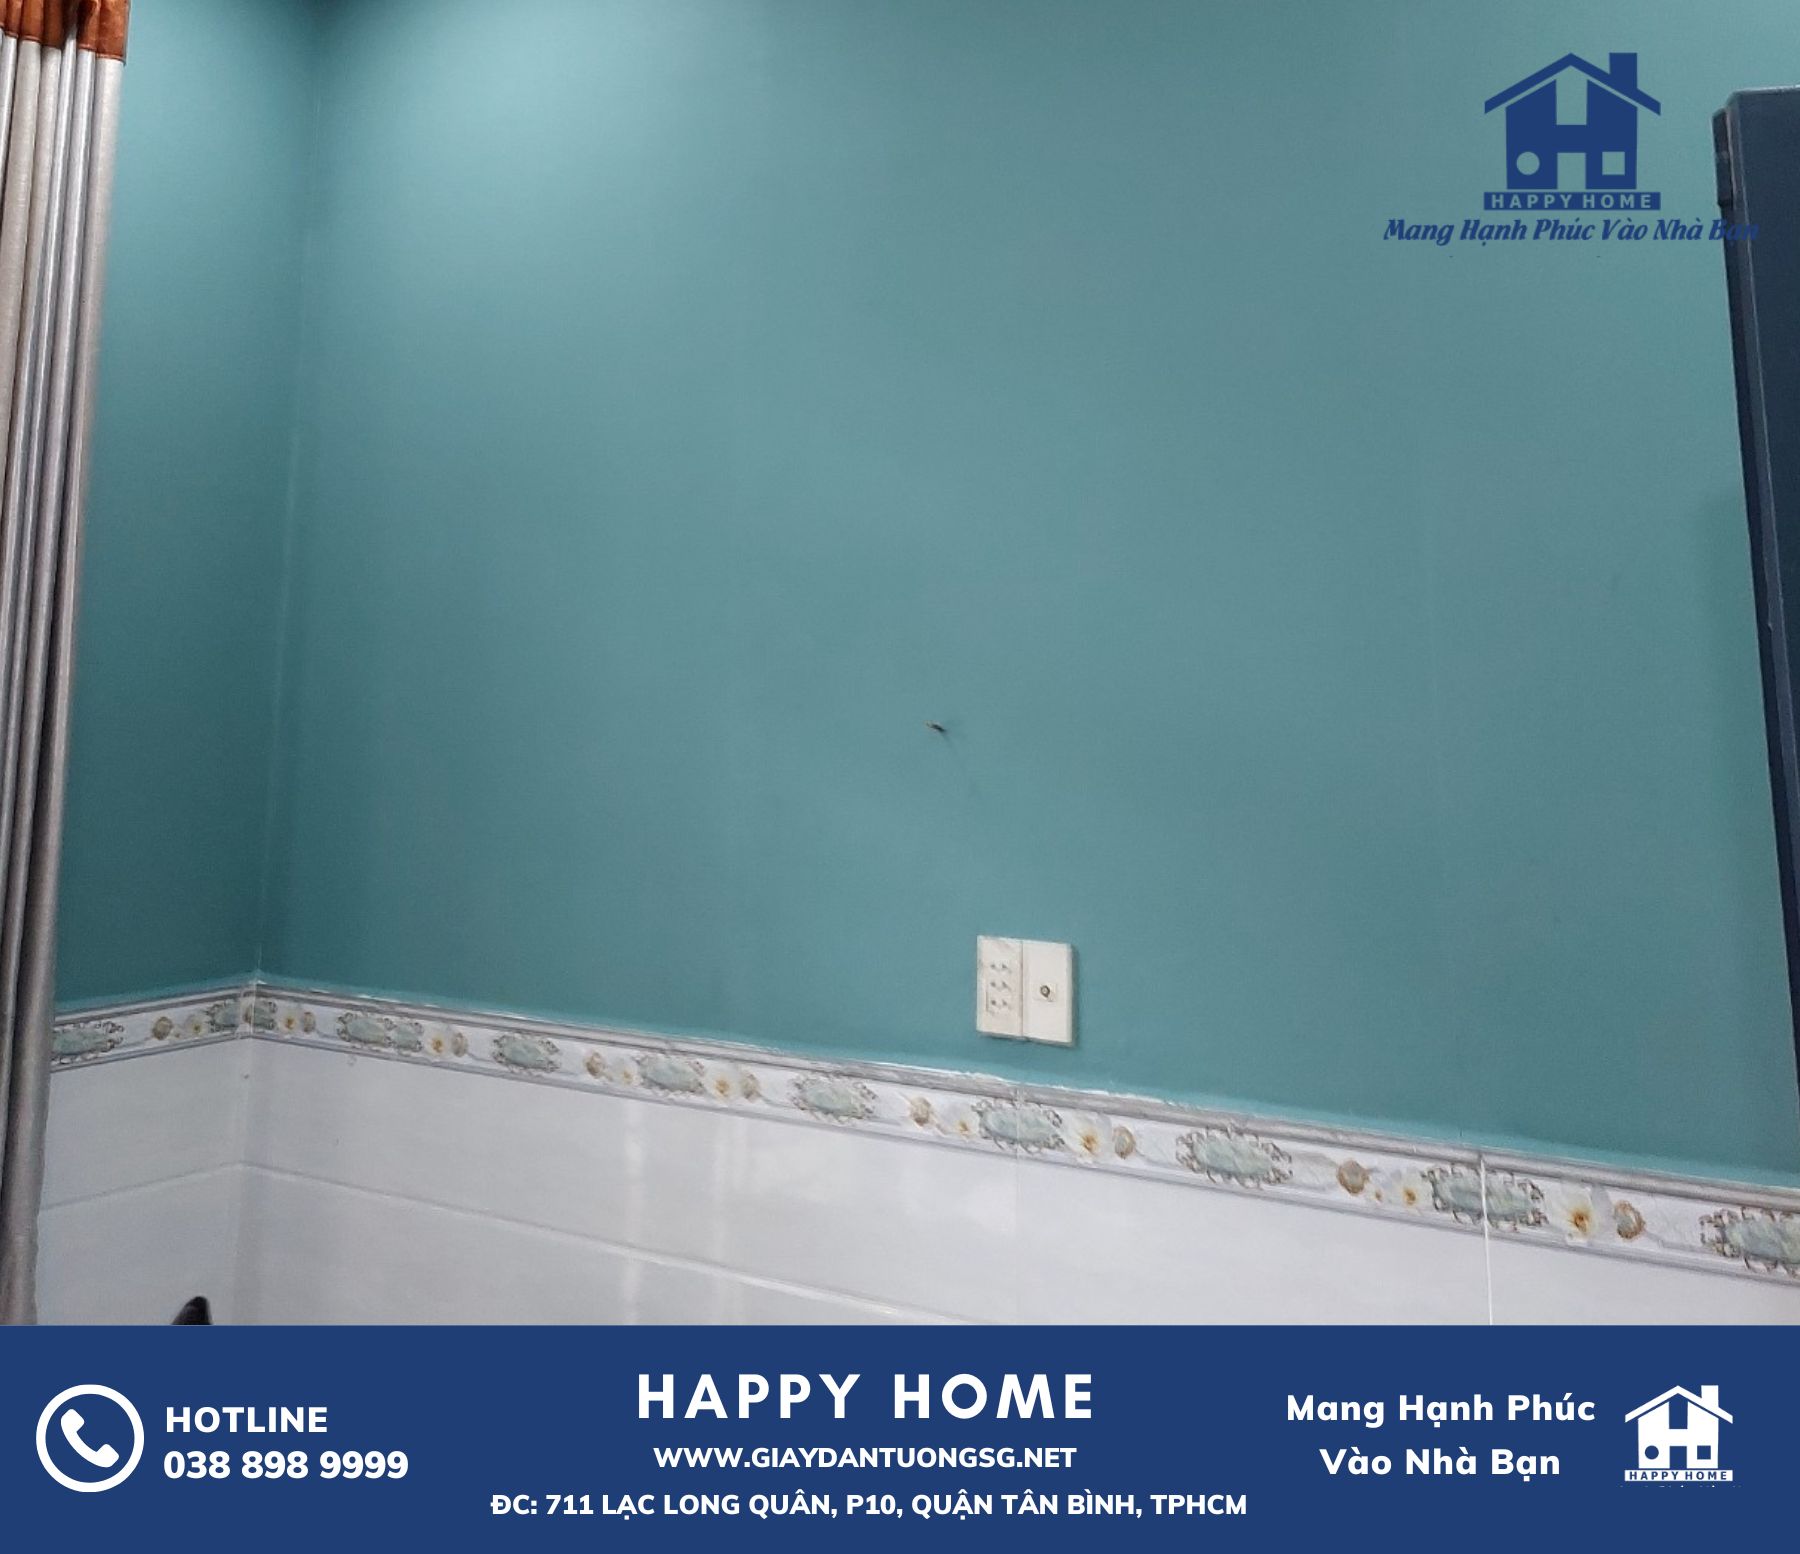 Happy Home - Nhà cung cấp giấy dán tường chất lượng cho ngôi nhà của bạn